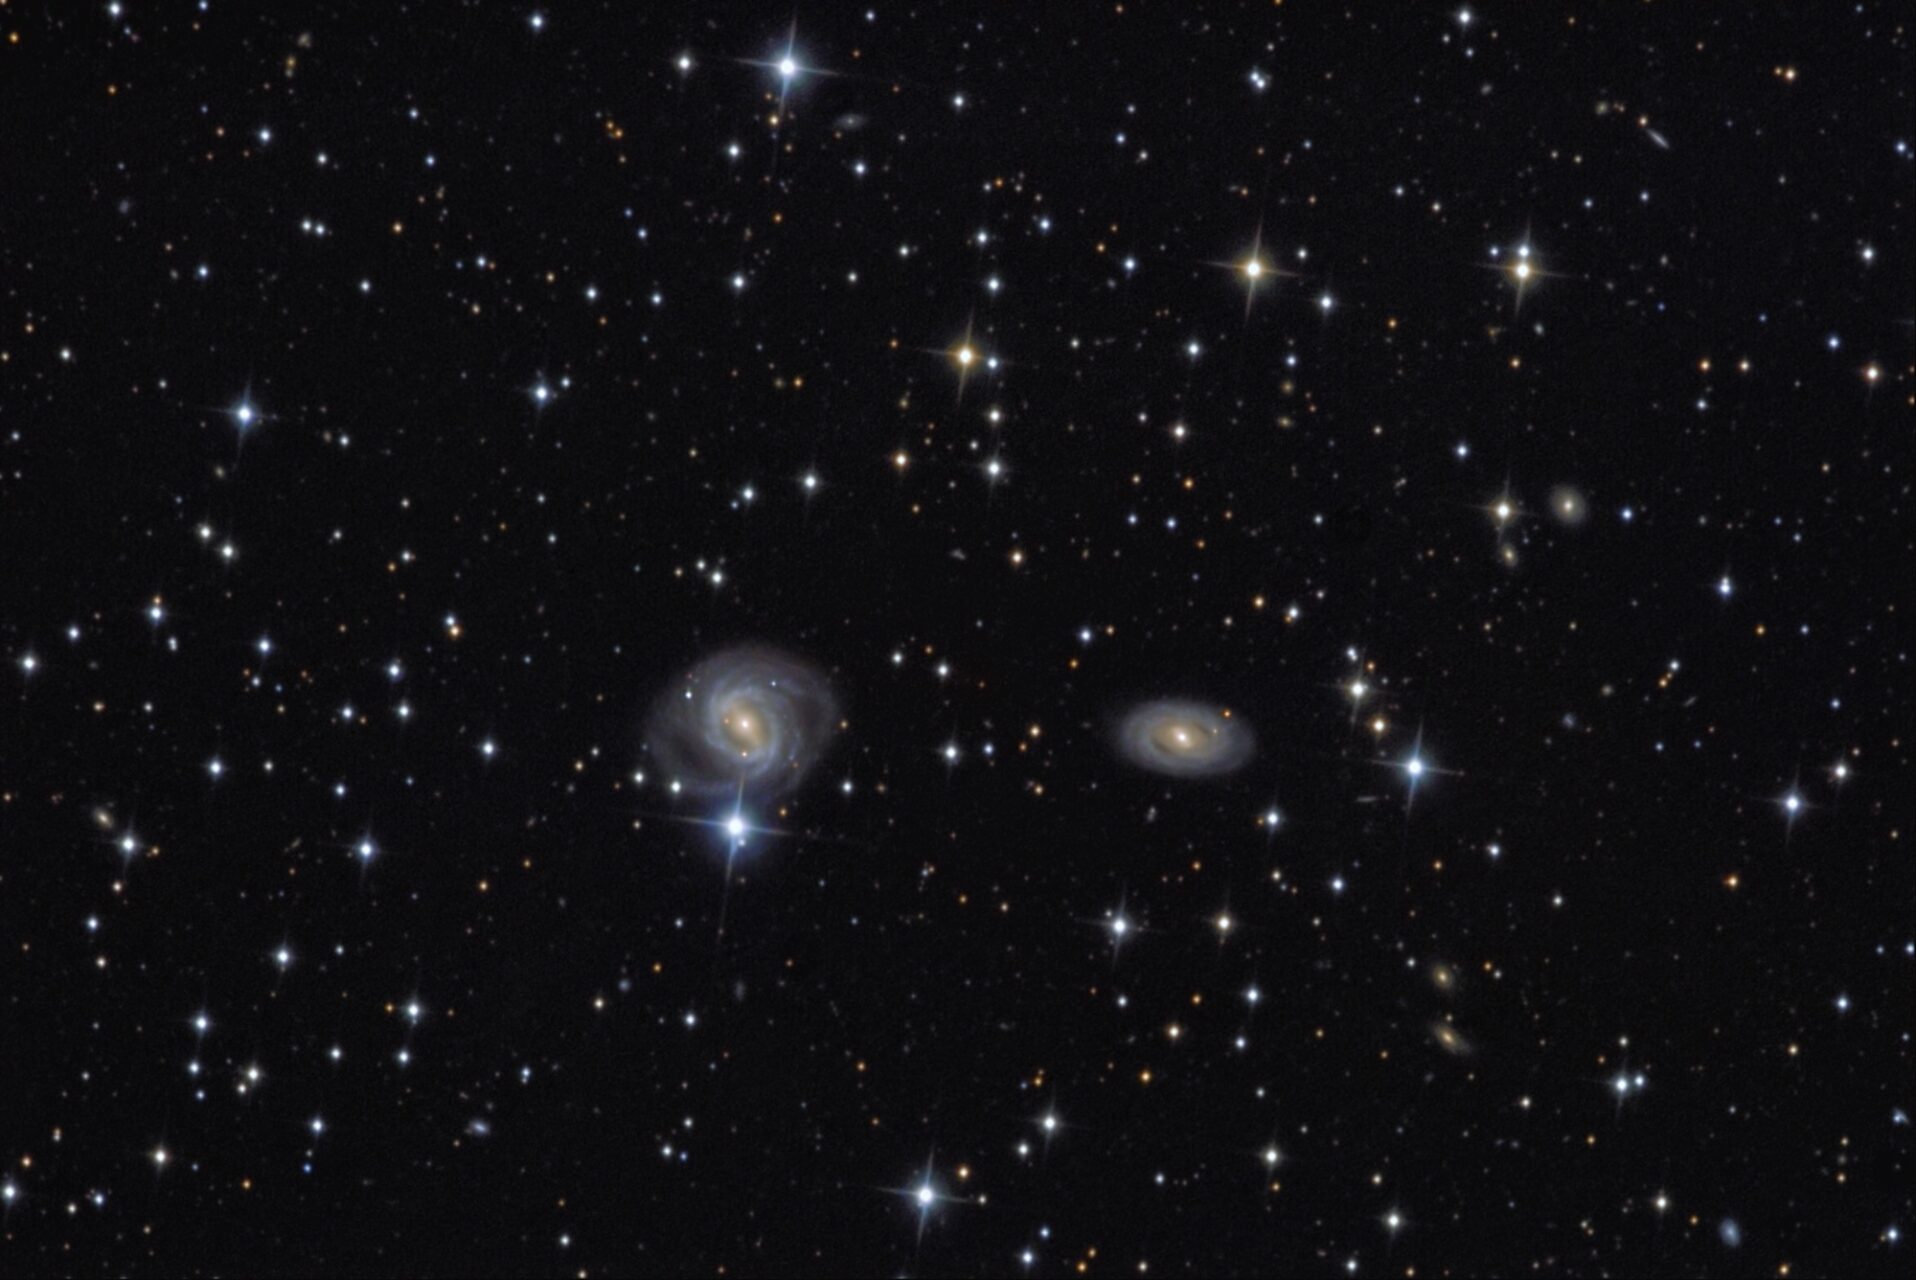 NGC 2487